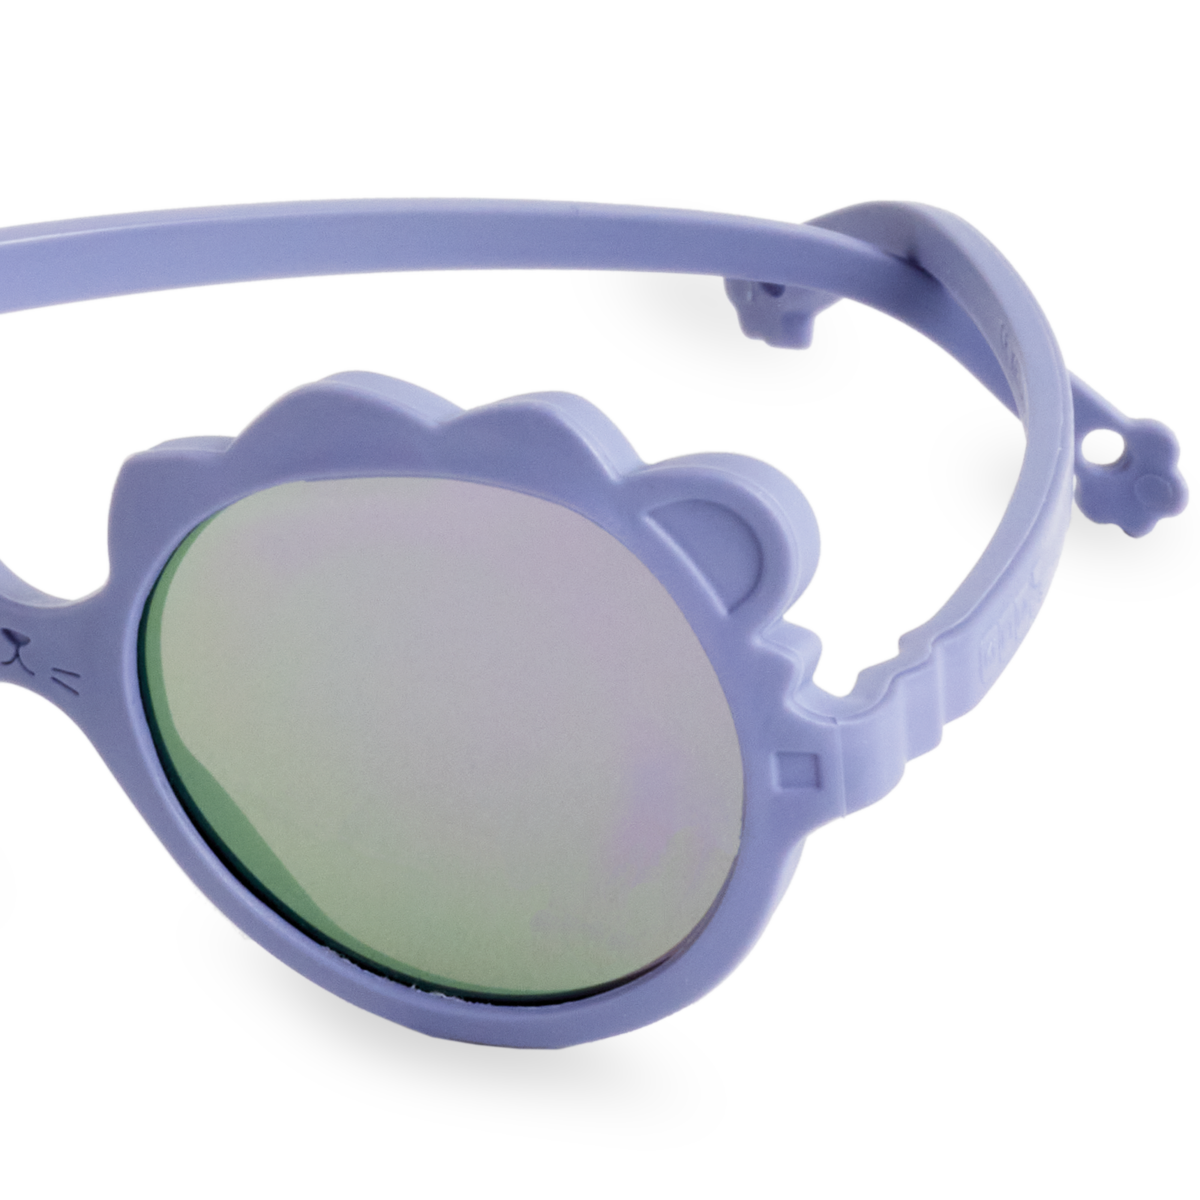 Kietla Okulary Przeciwsłoneczne Lion 2-4 Lilac